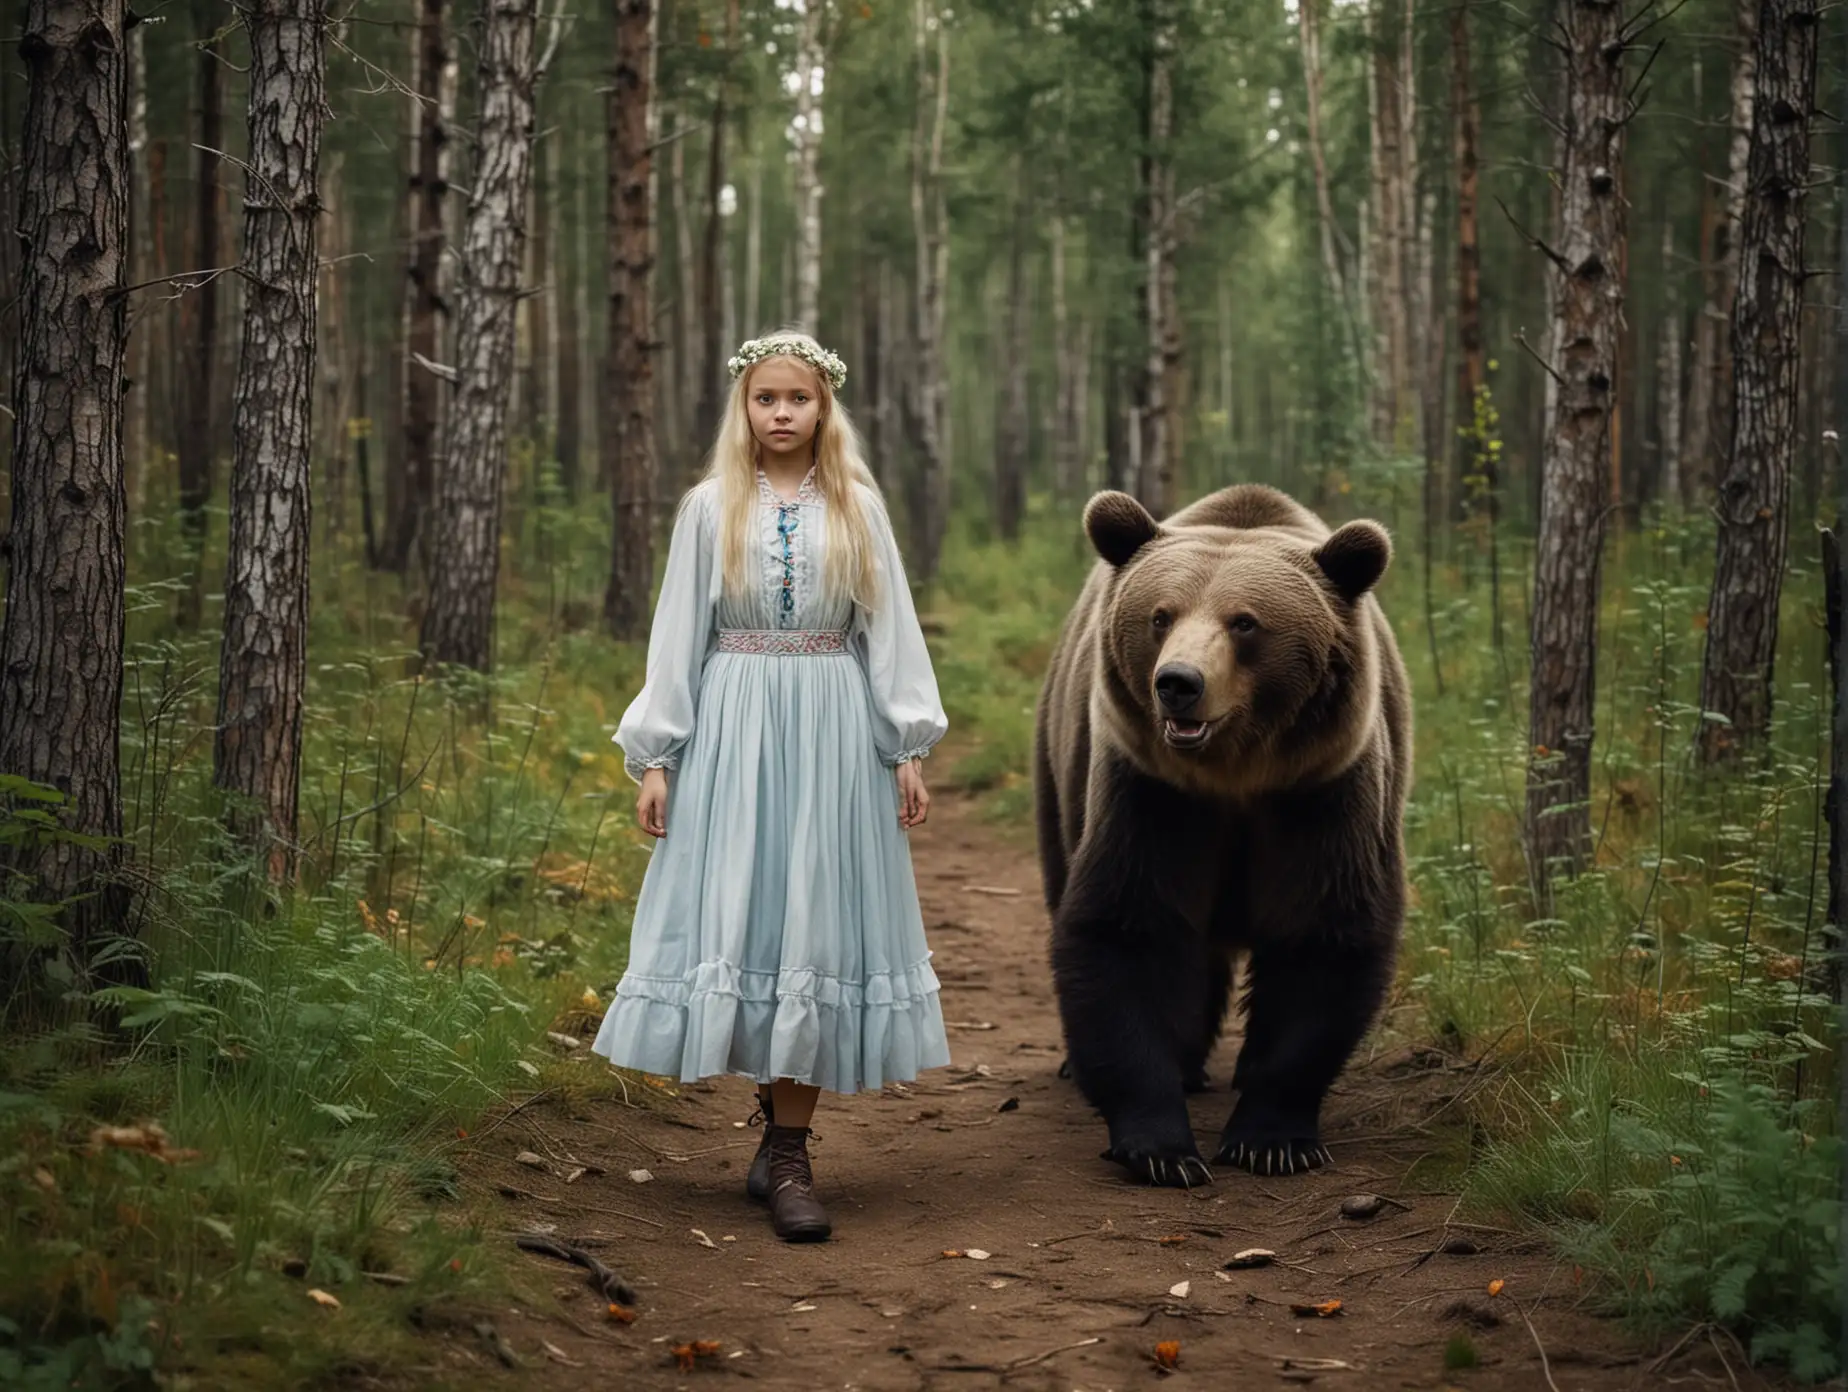 славянская девушка гуляет с медведем по лесу, сказка